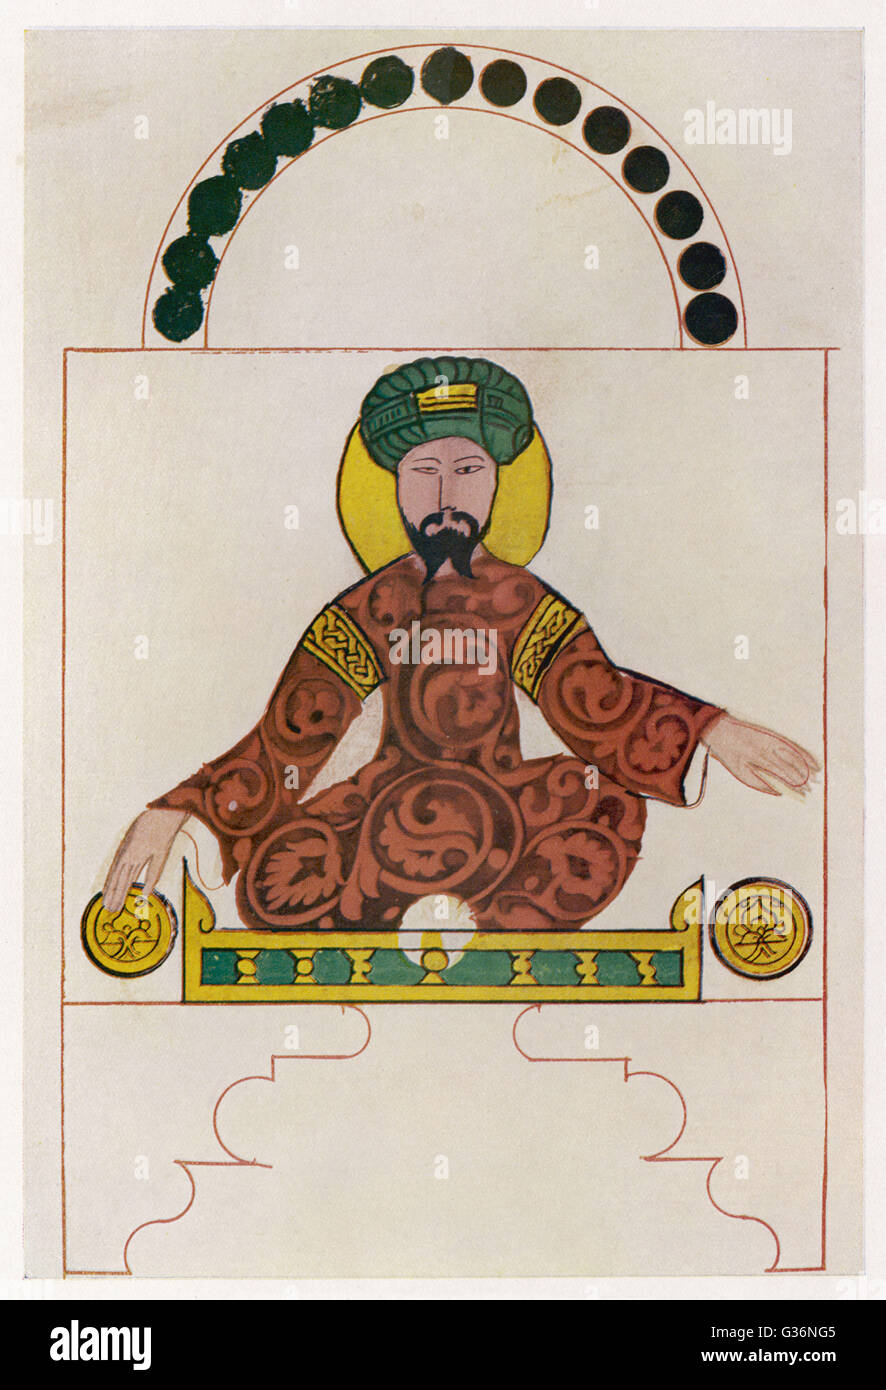 Salah Ad-Din Yusuf Ibn Ayyub(1138-1193), bekannt als Saladin, muslimischen Sultan von Ägypten und Syrien (regierte 1174-1193).      Datum: ca. 1180 Stockfoto